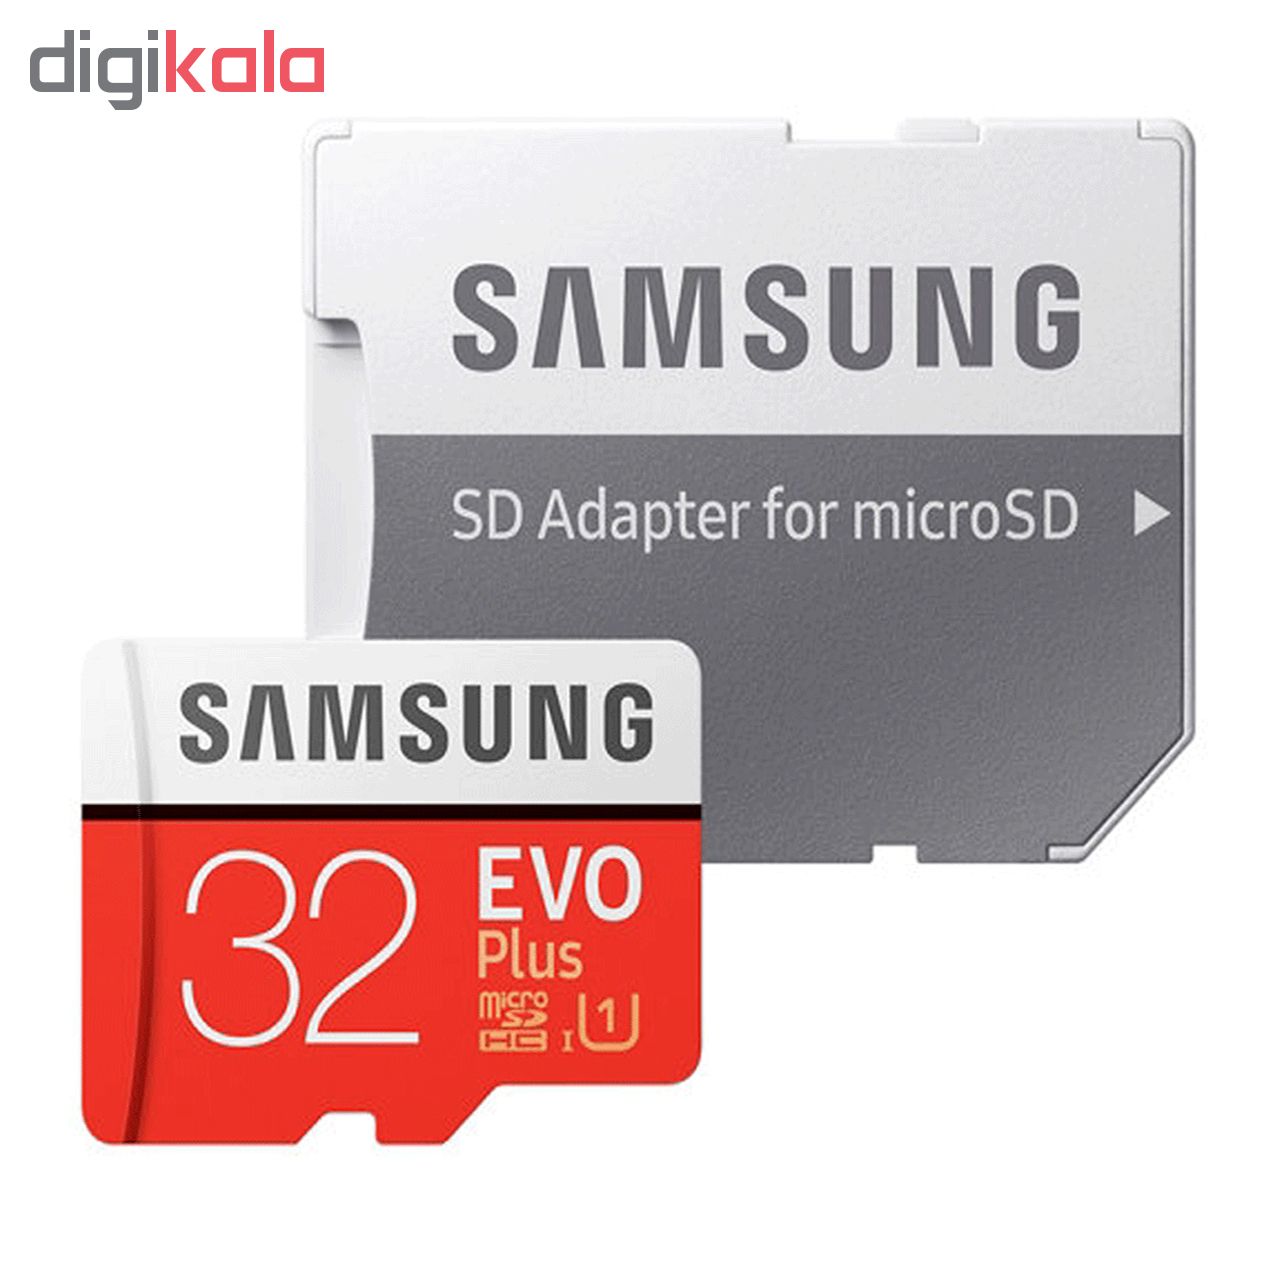 کارت حافظه microSDHC مدل Evo Plus کلاس 10 استاندارد UHS-I U1 سرعت 80MBps ظرفیت 32 گیگابایت به همراه آداپتور SD